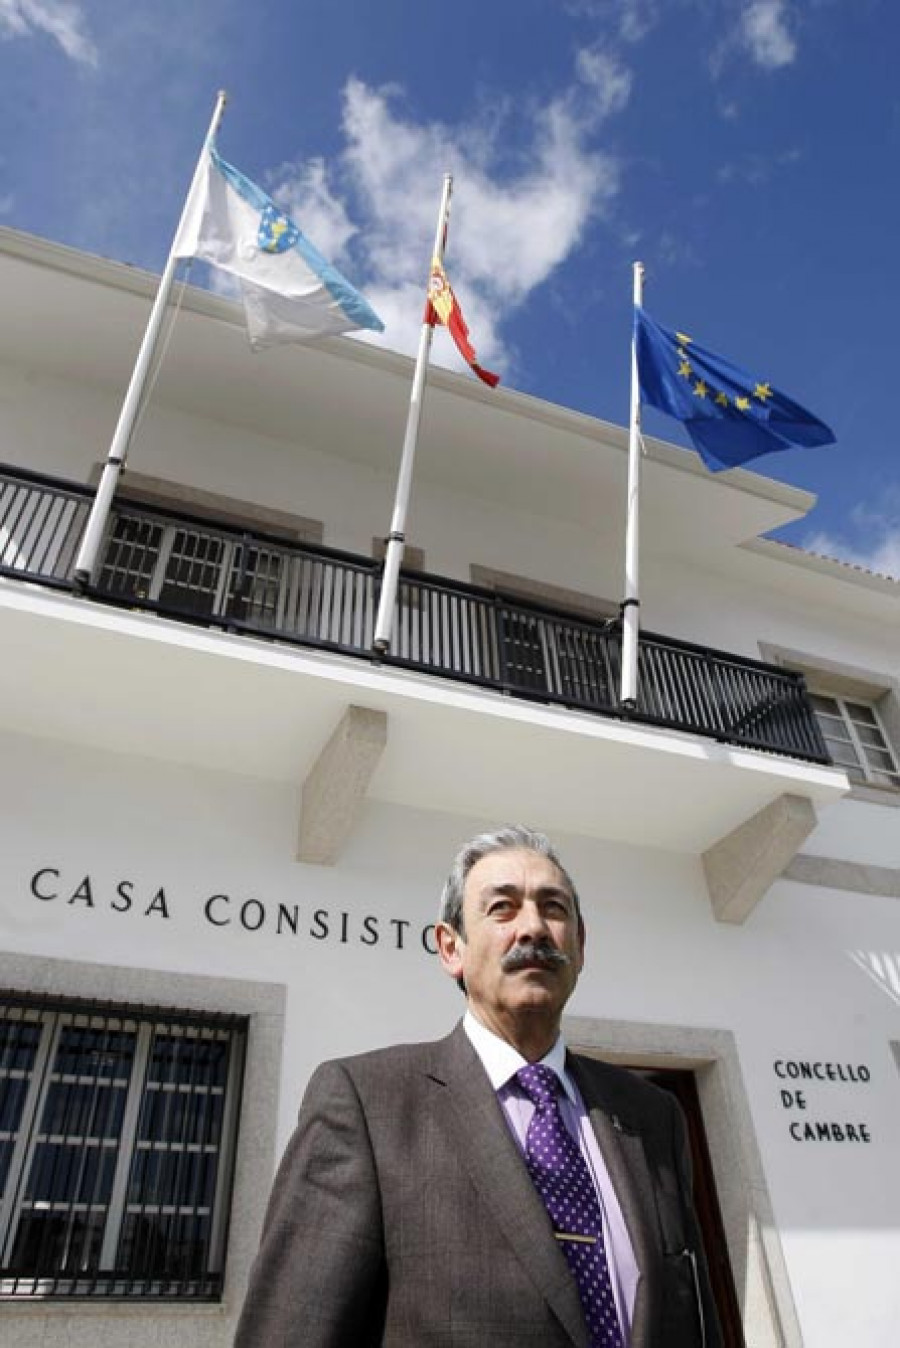 “Sinceramente, yo no veo a Óscar Patiño como alcalde de Cambre”